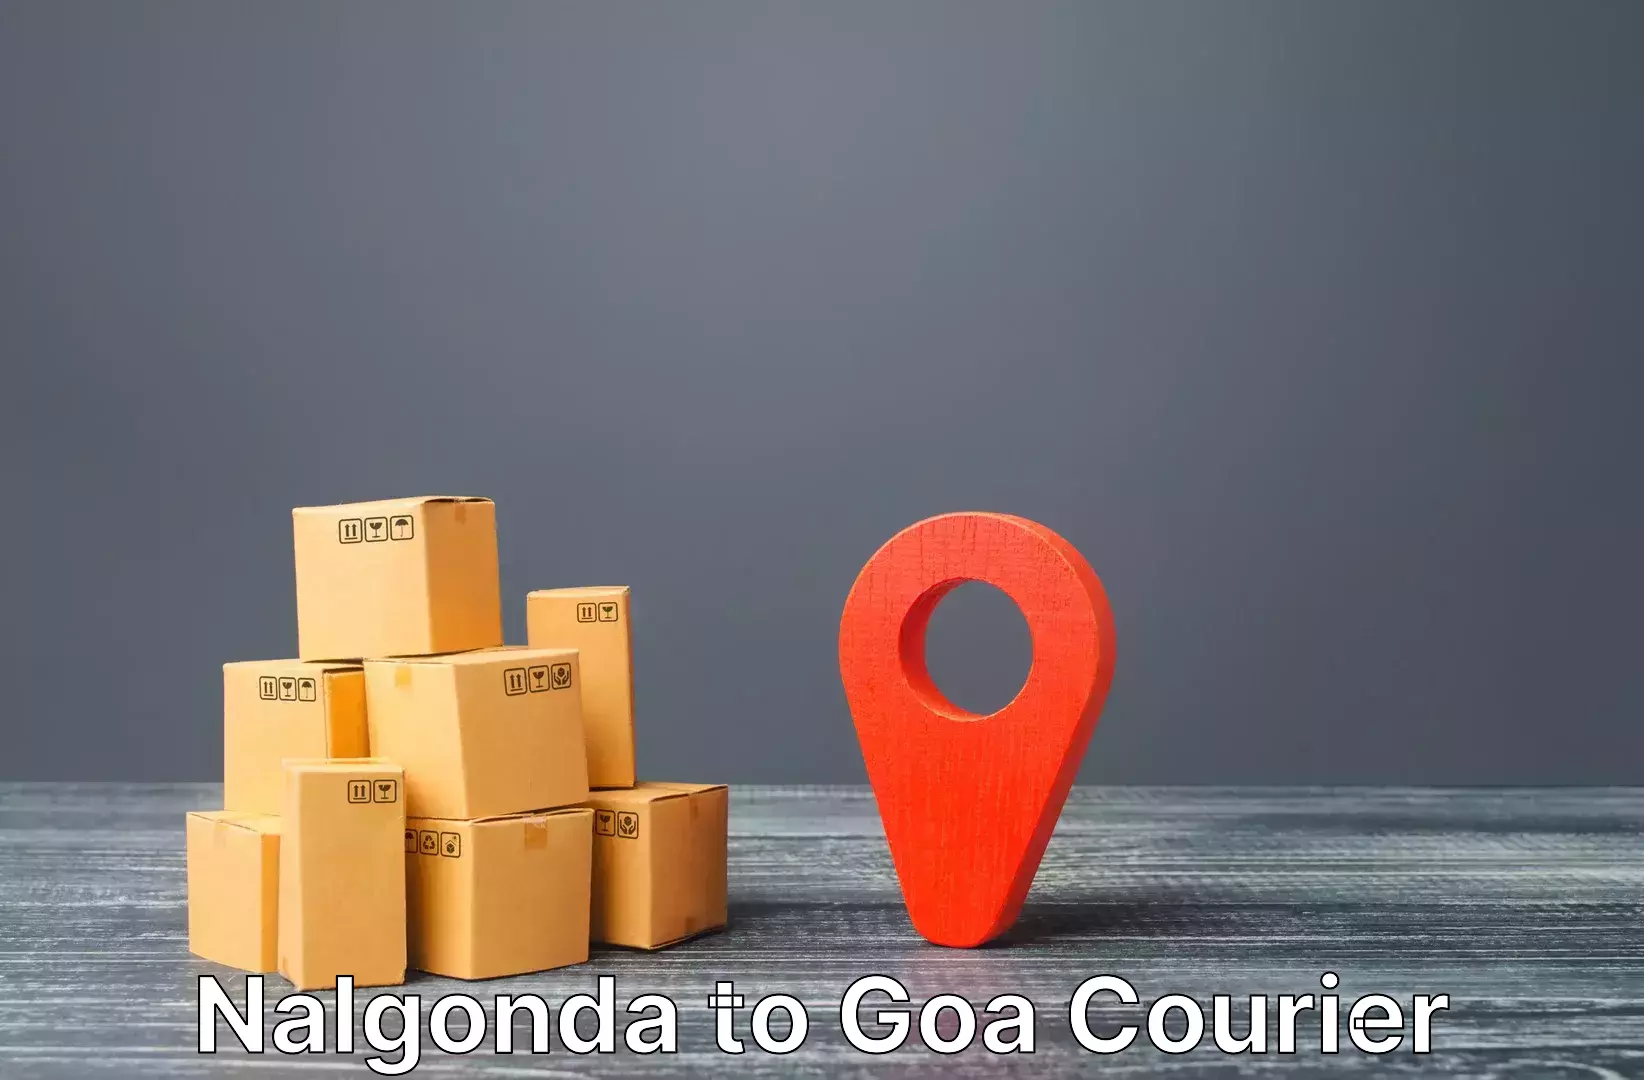 Personalized luggage shipping Nalgonda to NIT Goa